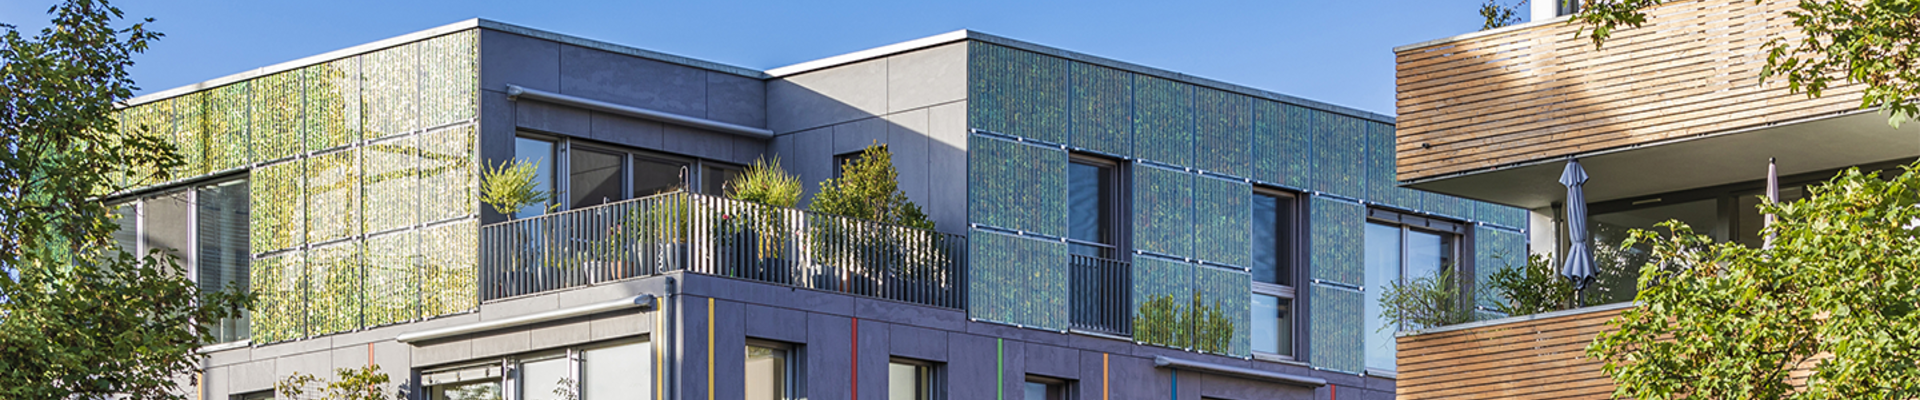 Das Bild zeigt moderne energieeffiziente Mehrfamilienhäuser. Die Häuser sind versehen mit Photovoltaikanlagen. Und umgeben von grünen Büschen und Bäumen. 